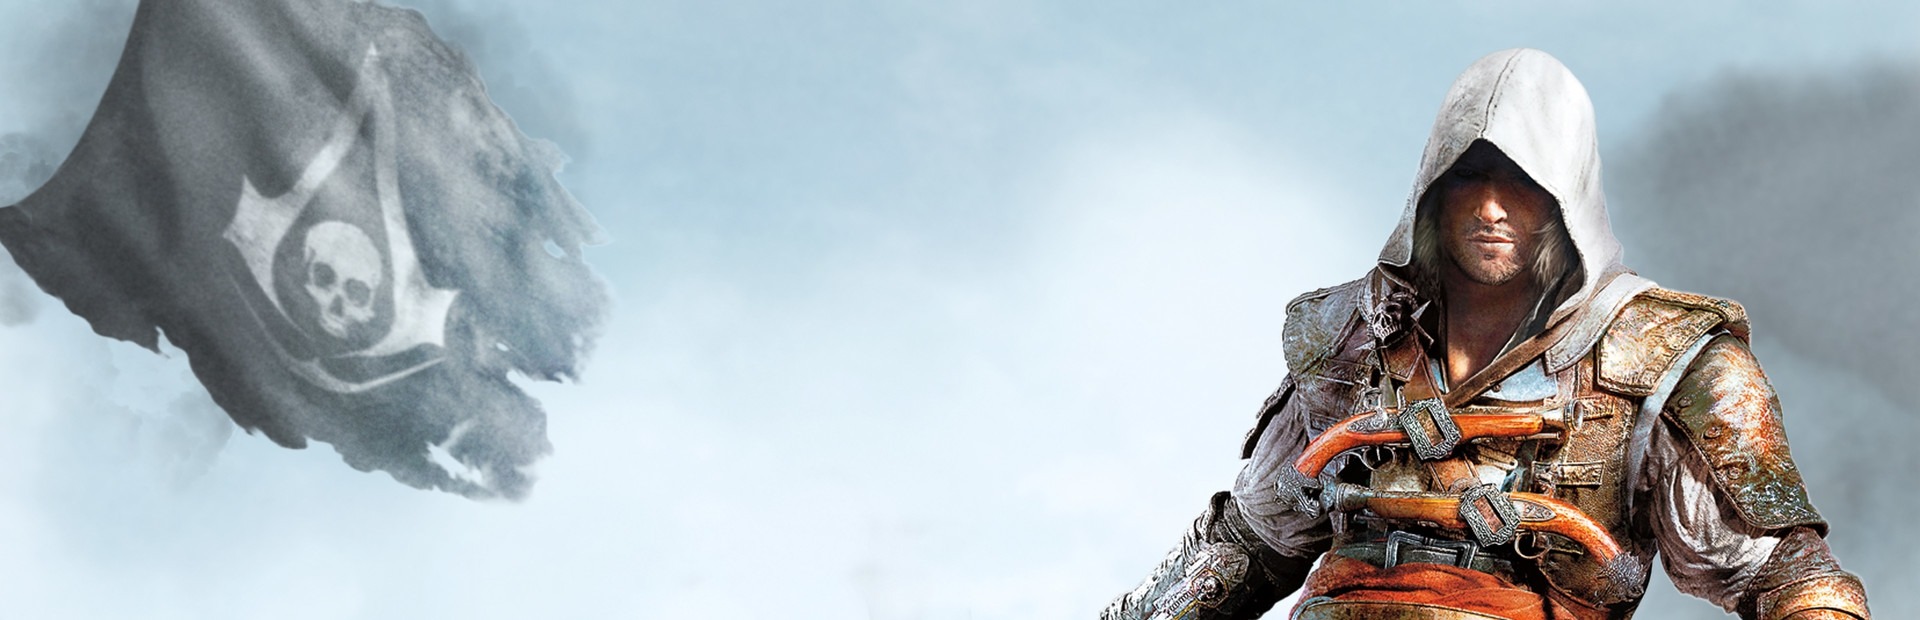 Сейвы ассасин крид. Баннер ассасин Крид. Assassins Creed 4 системные требования. Assassins Creed III обложка Steam. Assassins Creed Revelations обложка для Steam.